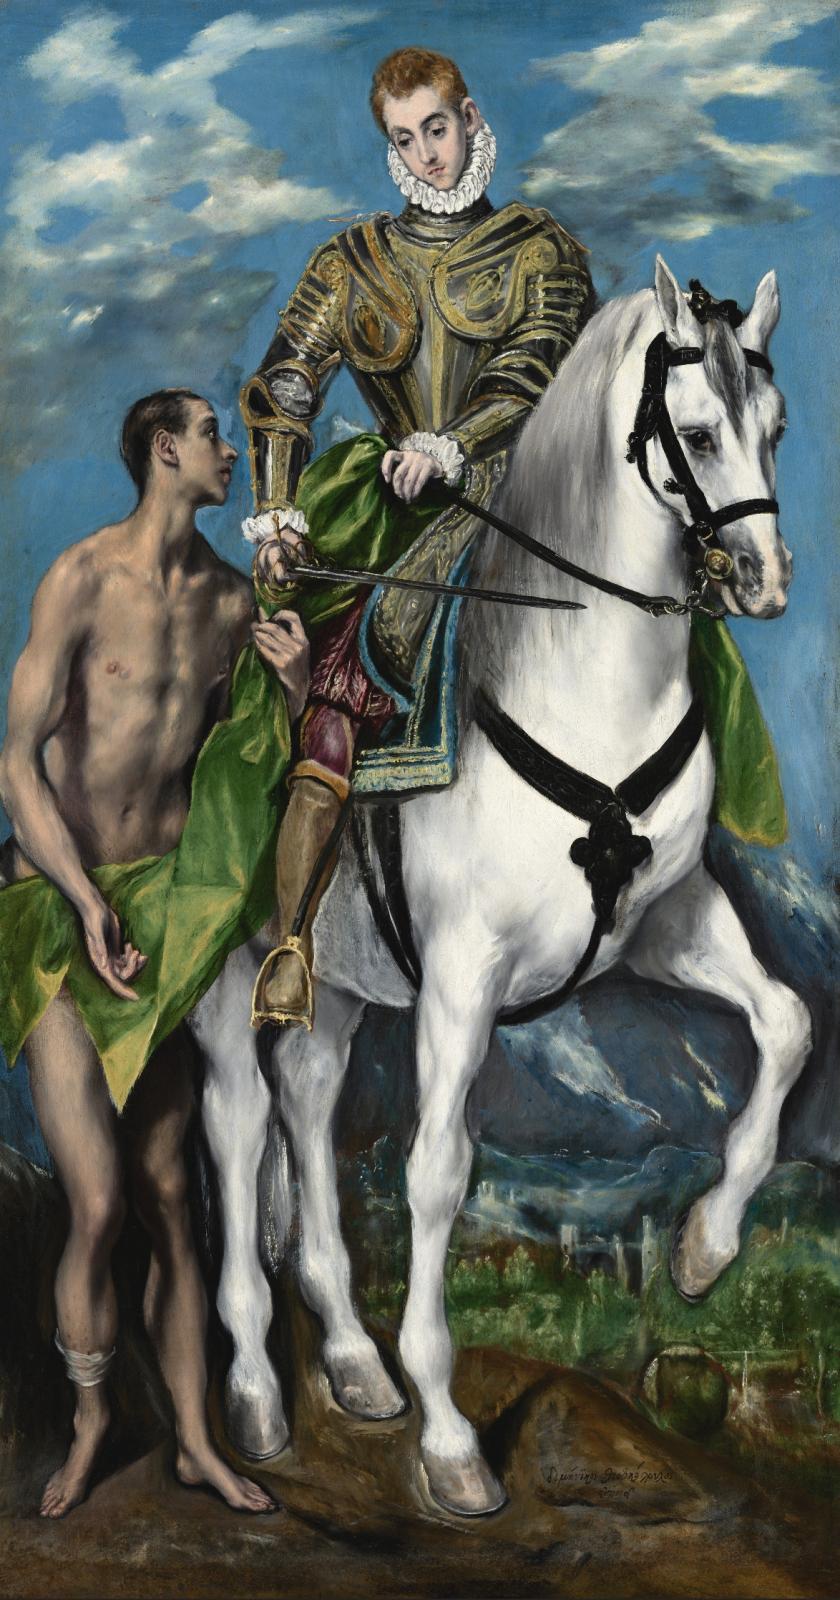 Une importante rétrospective Le Greco à Milan